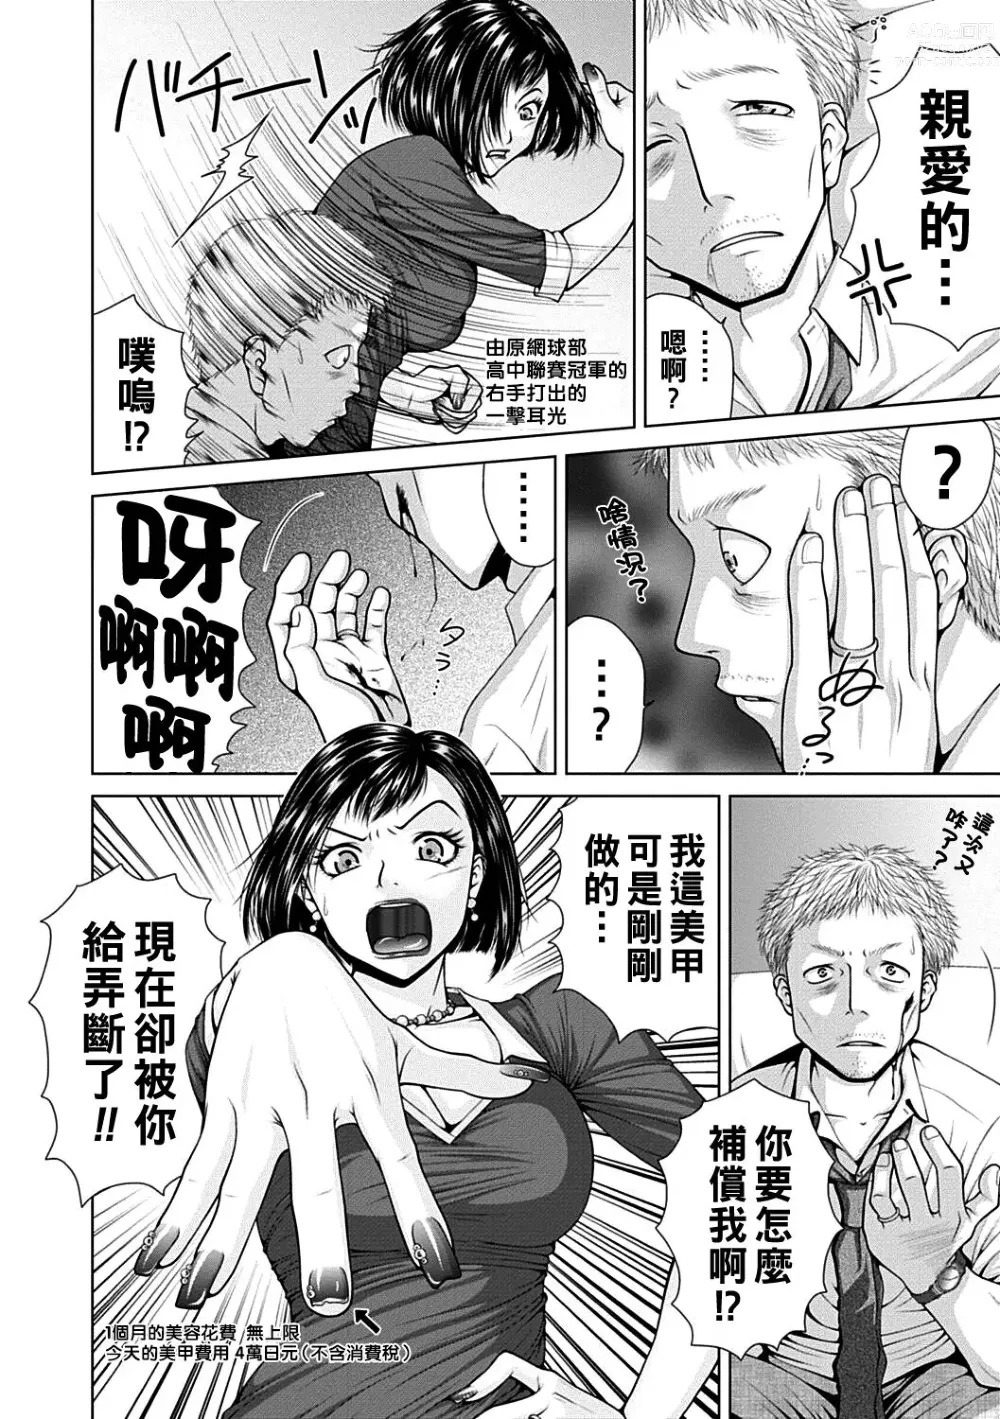 Page 4 of manga Salaryman  Elegy